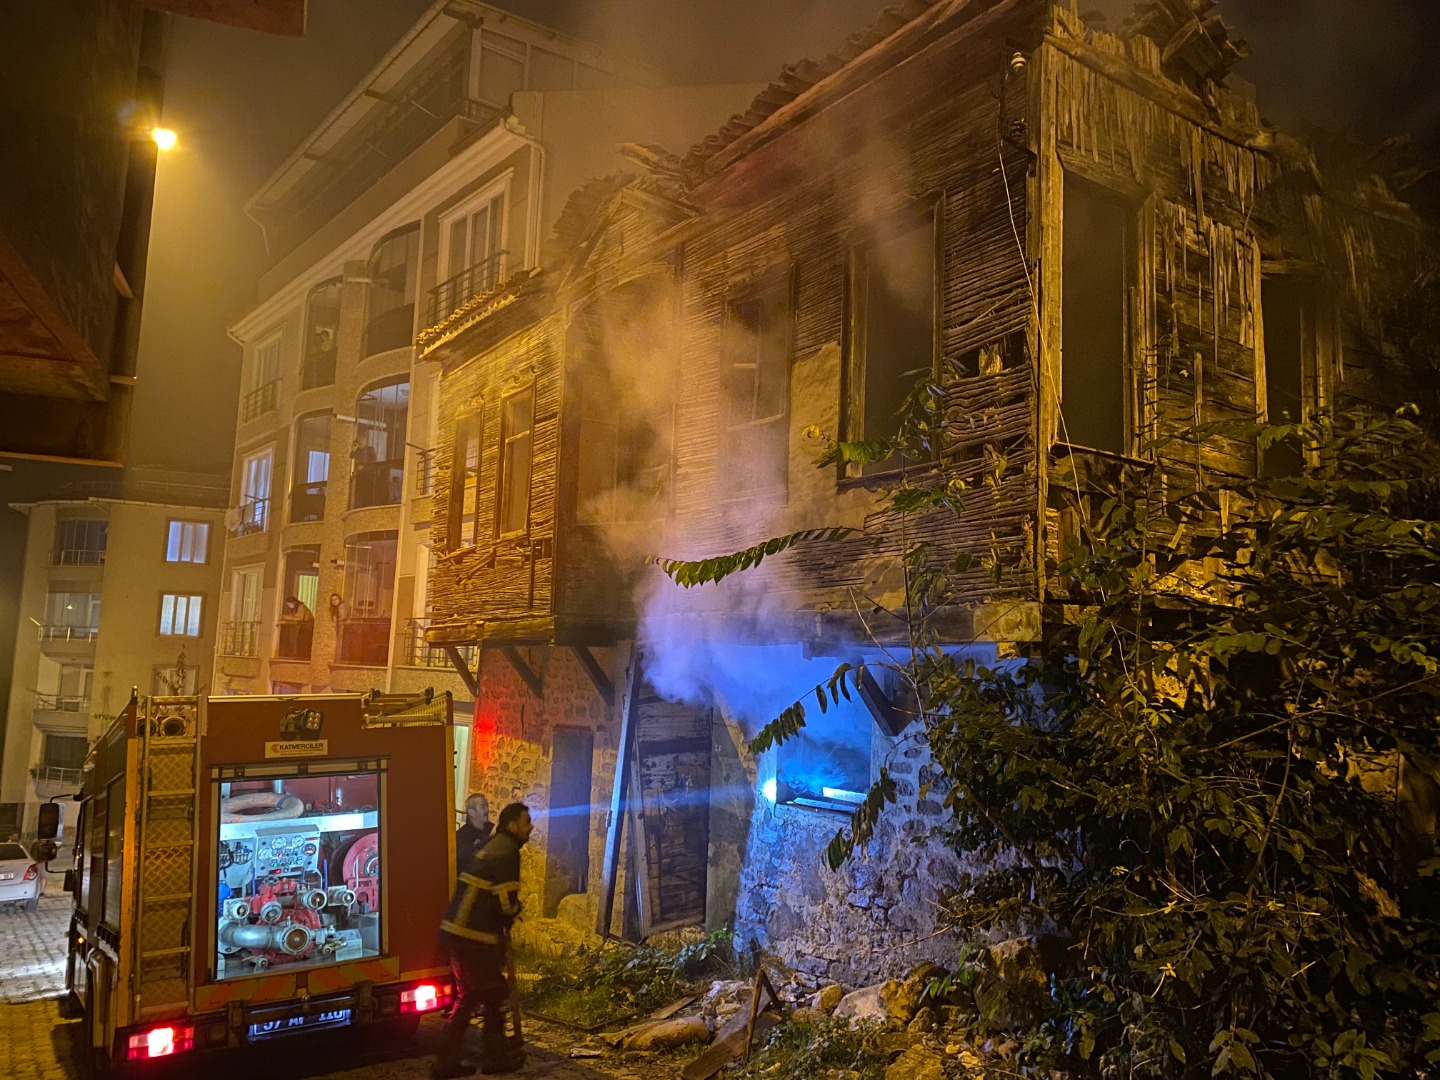 Sinop’ta metruk binada yangın